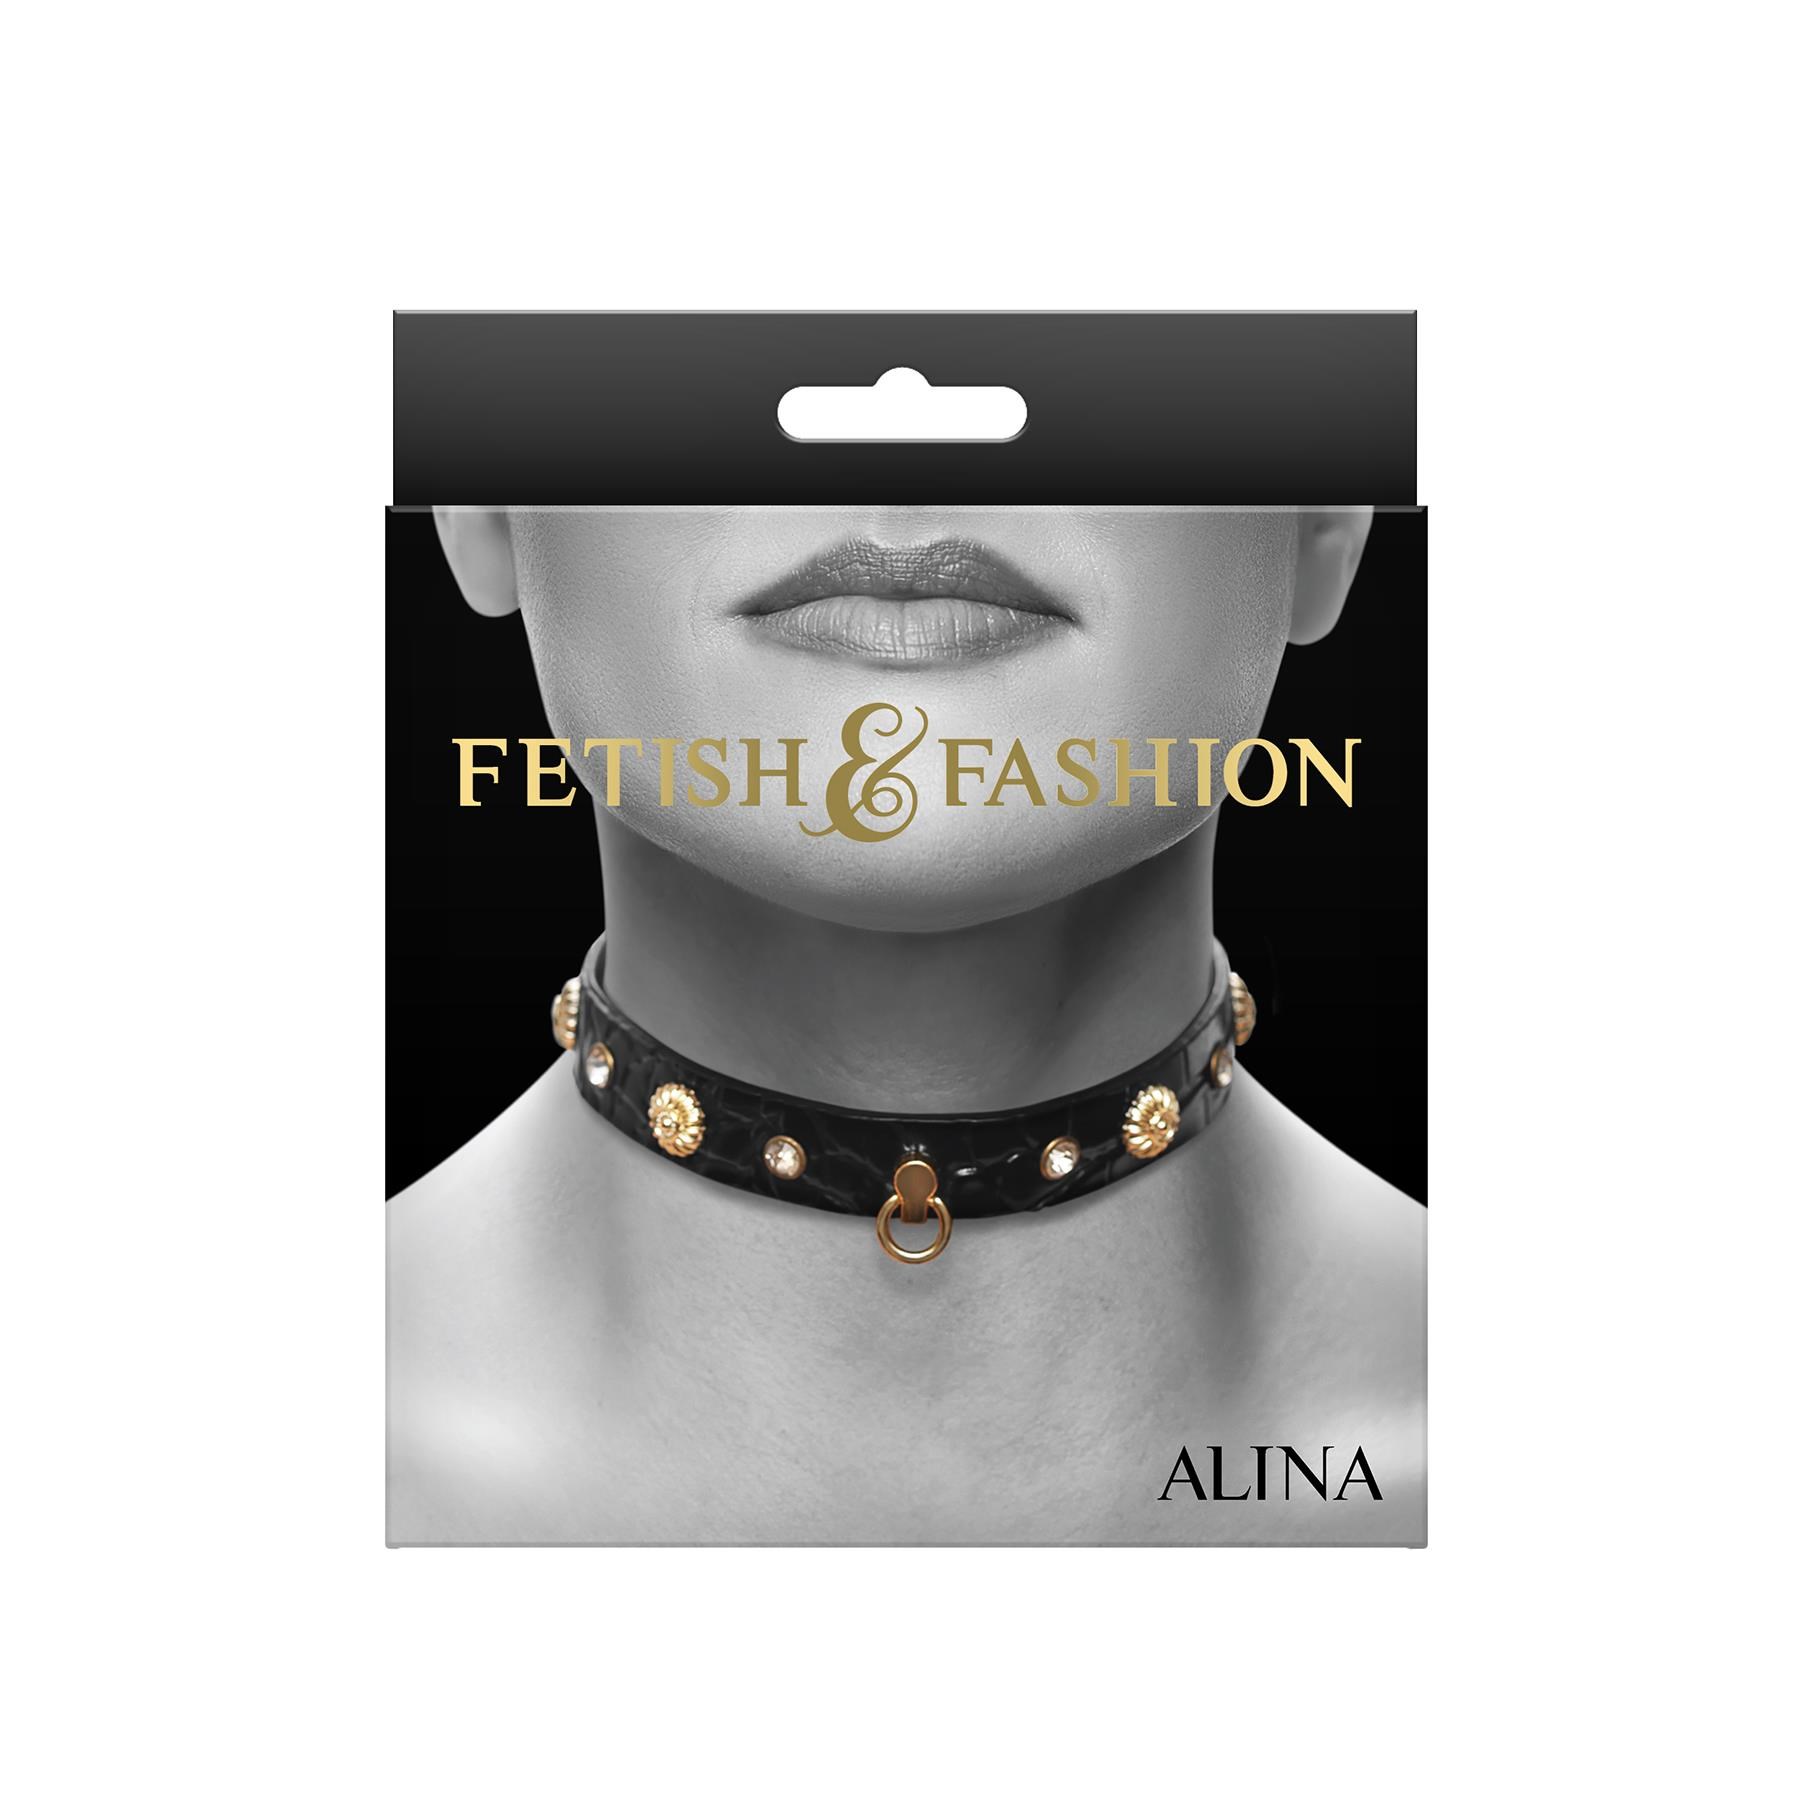 Fetish & Fashion Alina Bondage Collar - Packaging